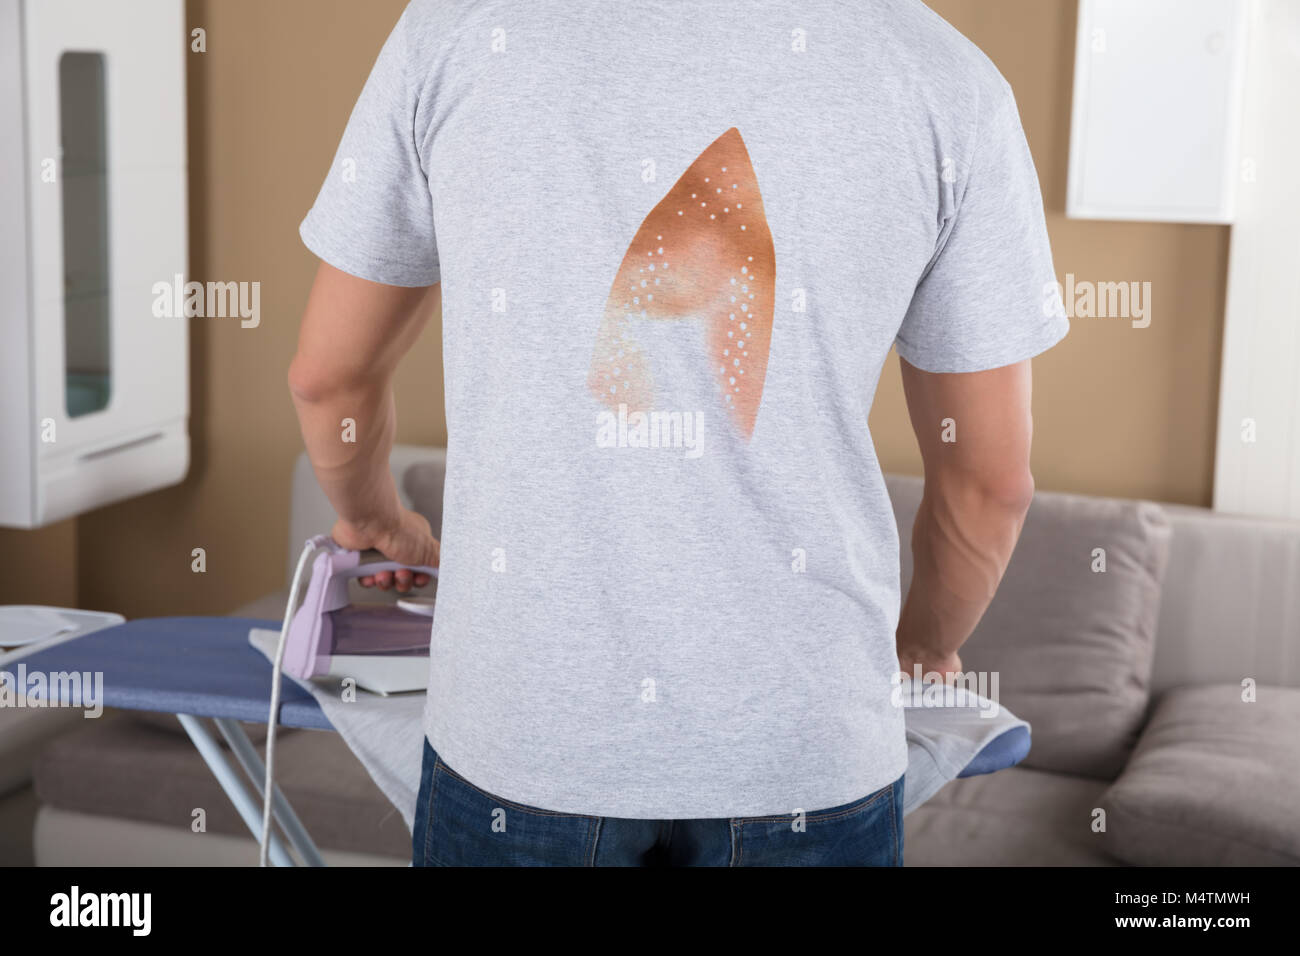 Ansicht Der Ruckseite Ein Mann Verbrannt T Shirt Bugeln Tuch Stockfotografie Alamy